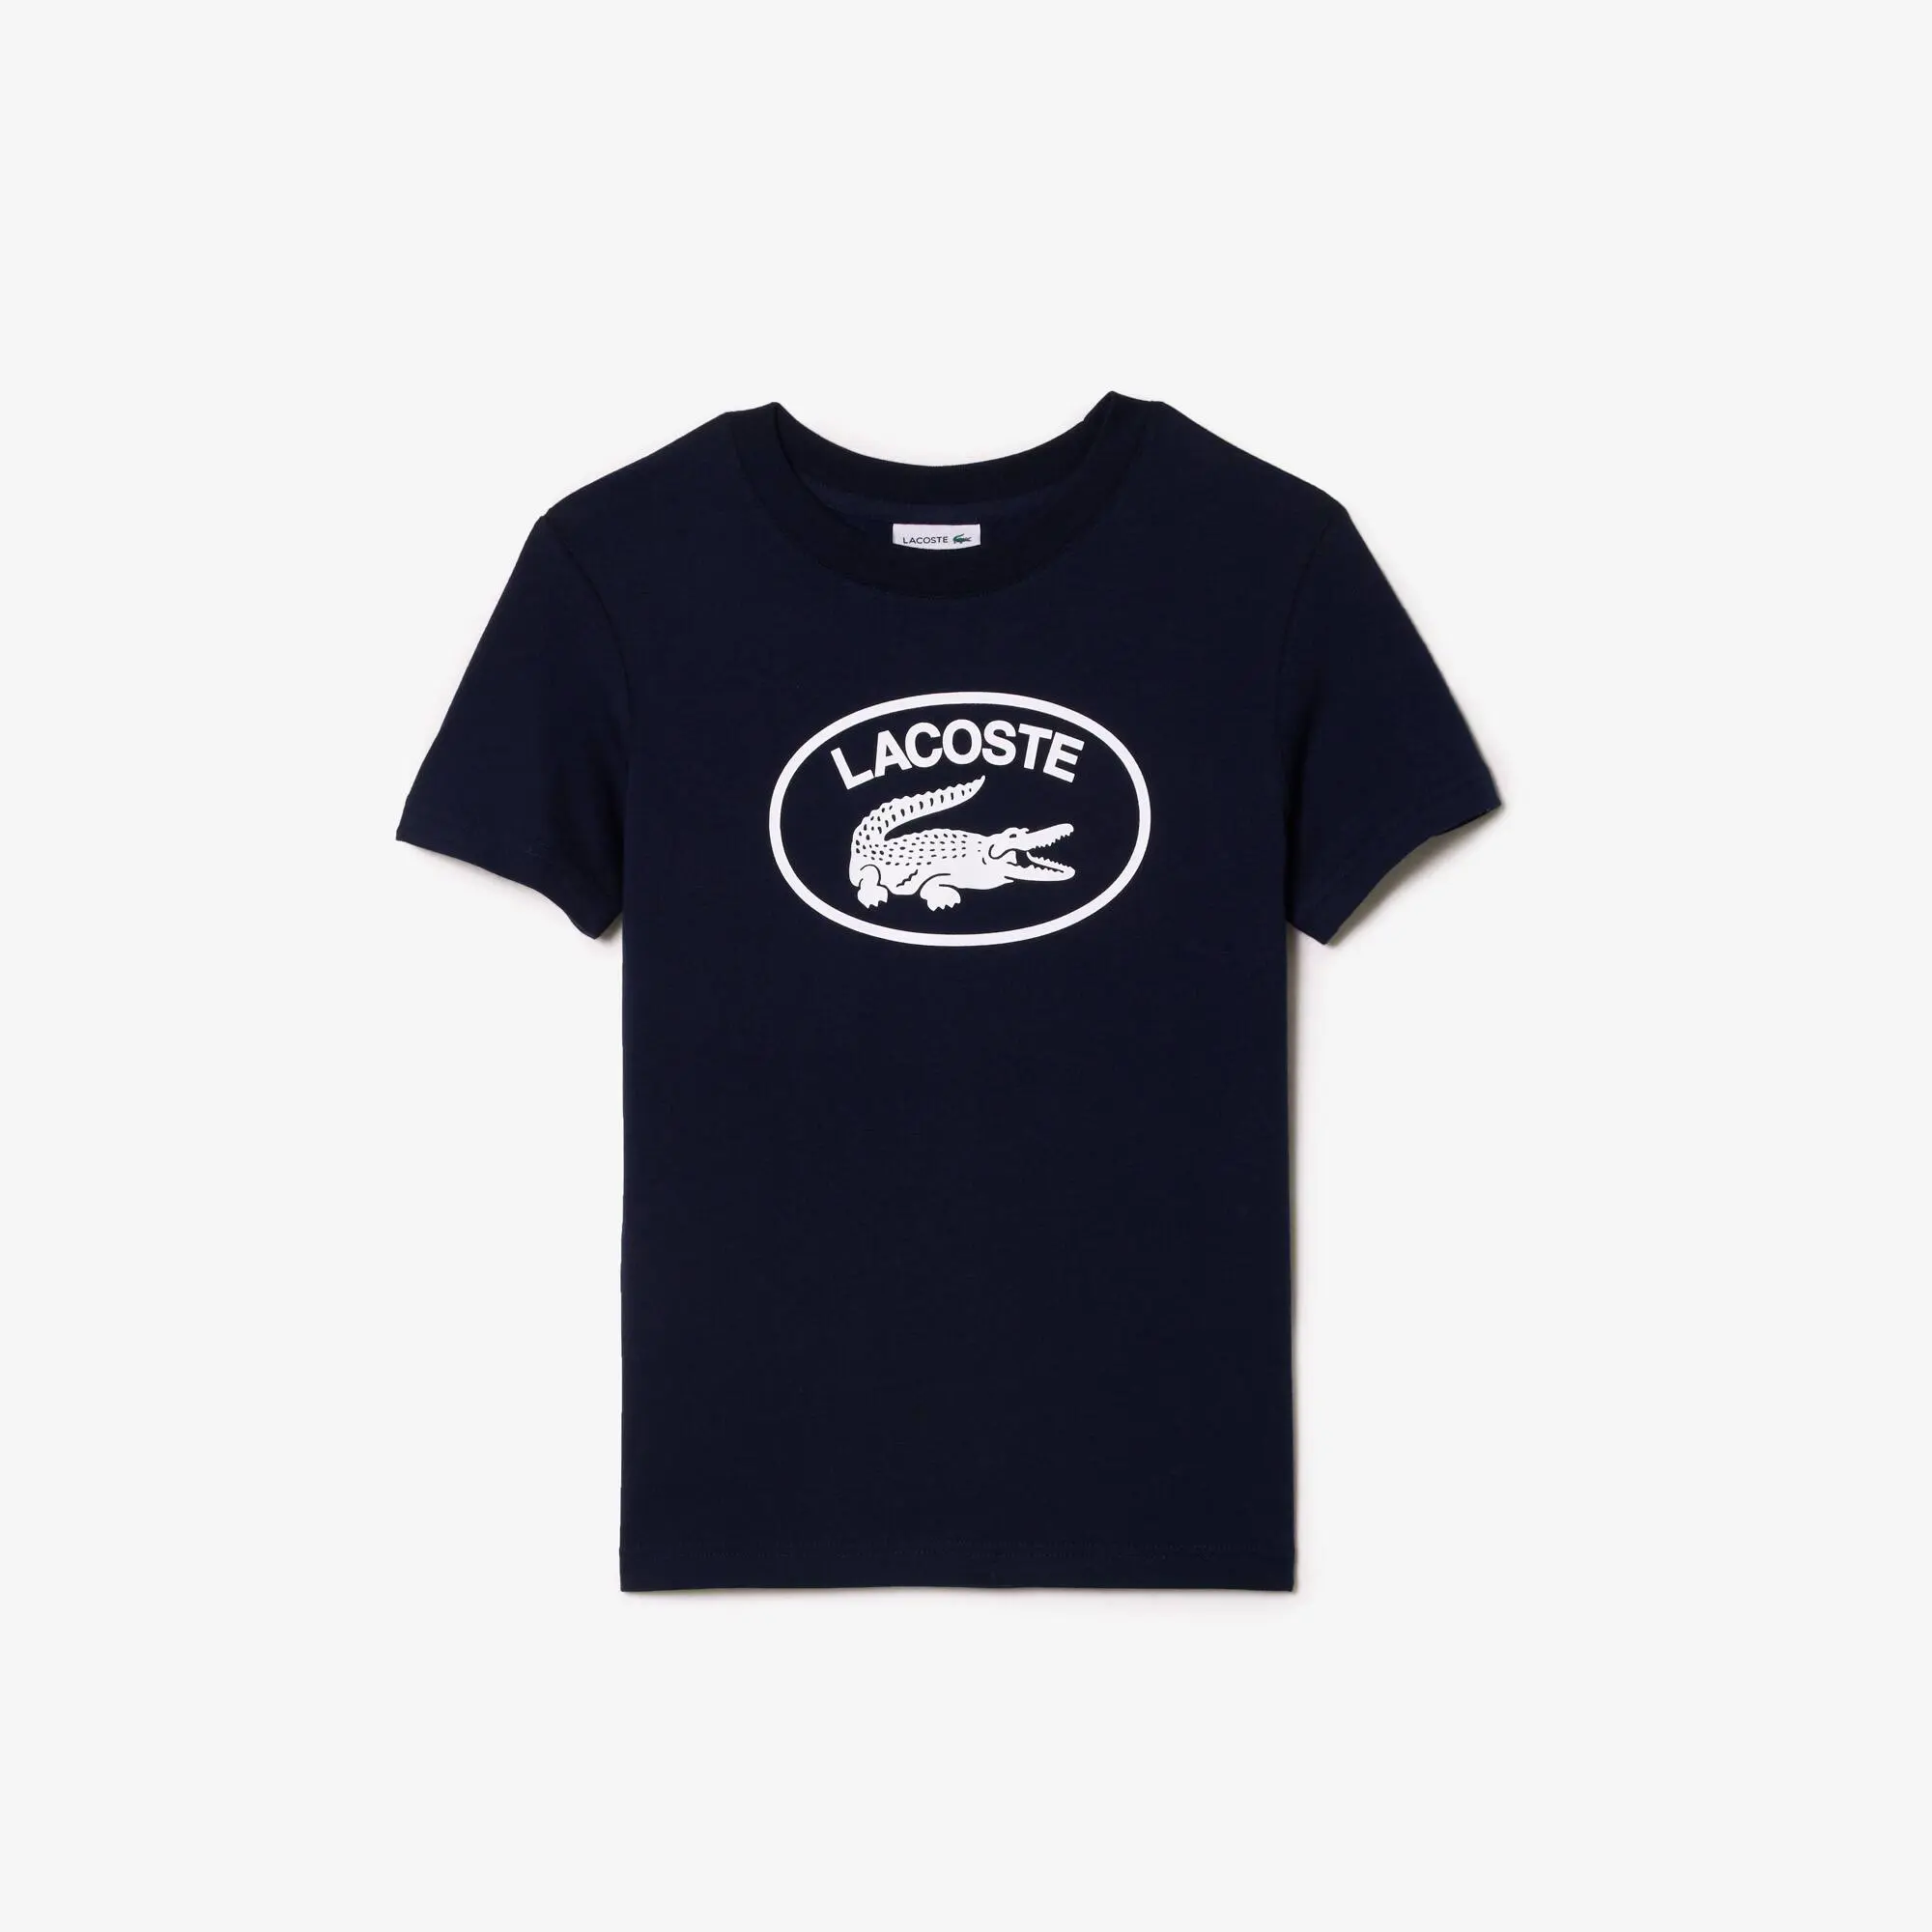 Lacoste T-shirt em malha de algodão com marca em contraste Lacoste para criança. 2